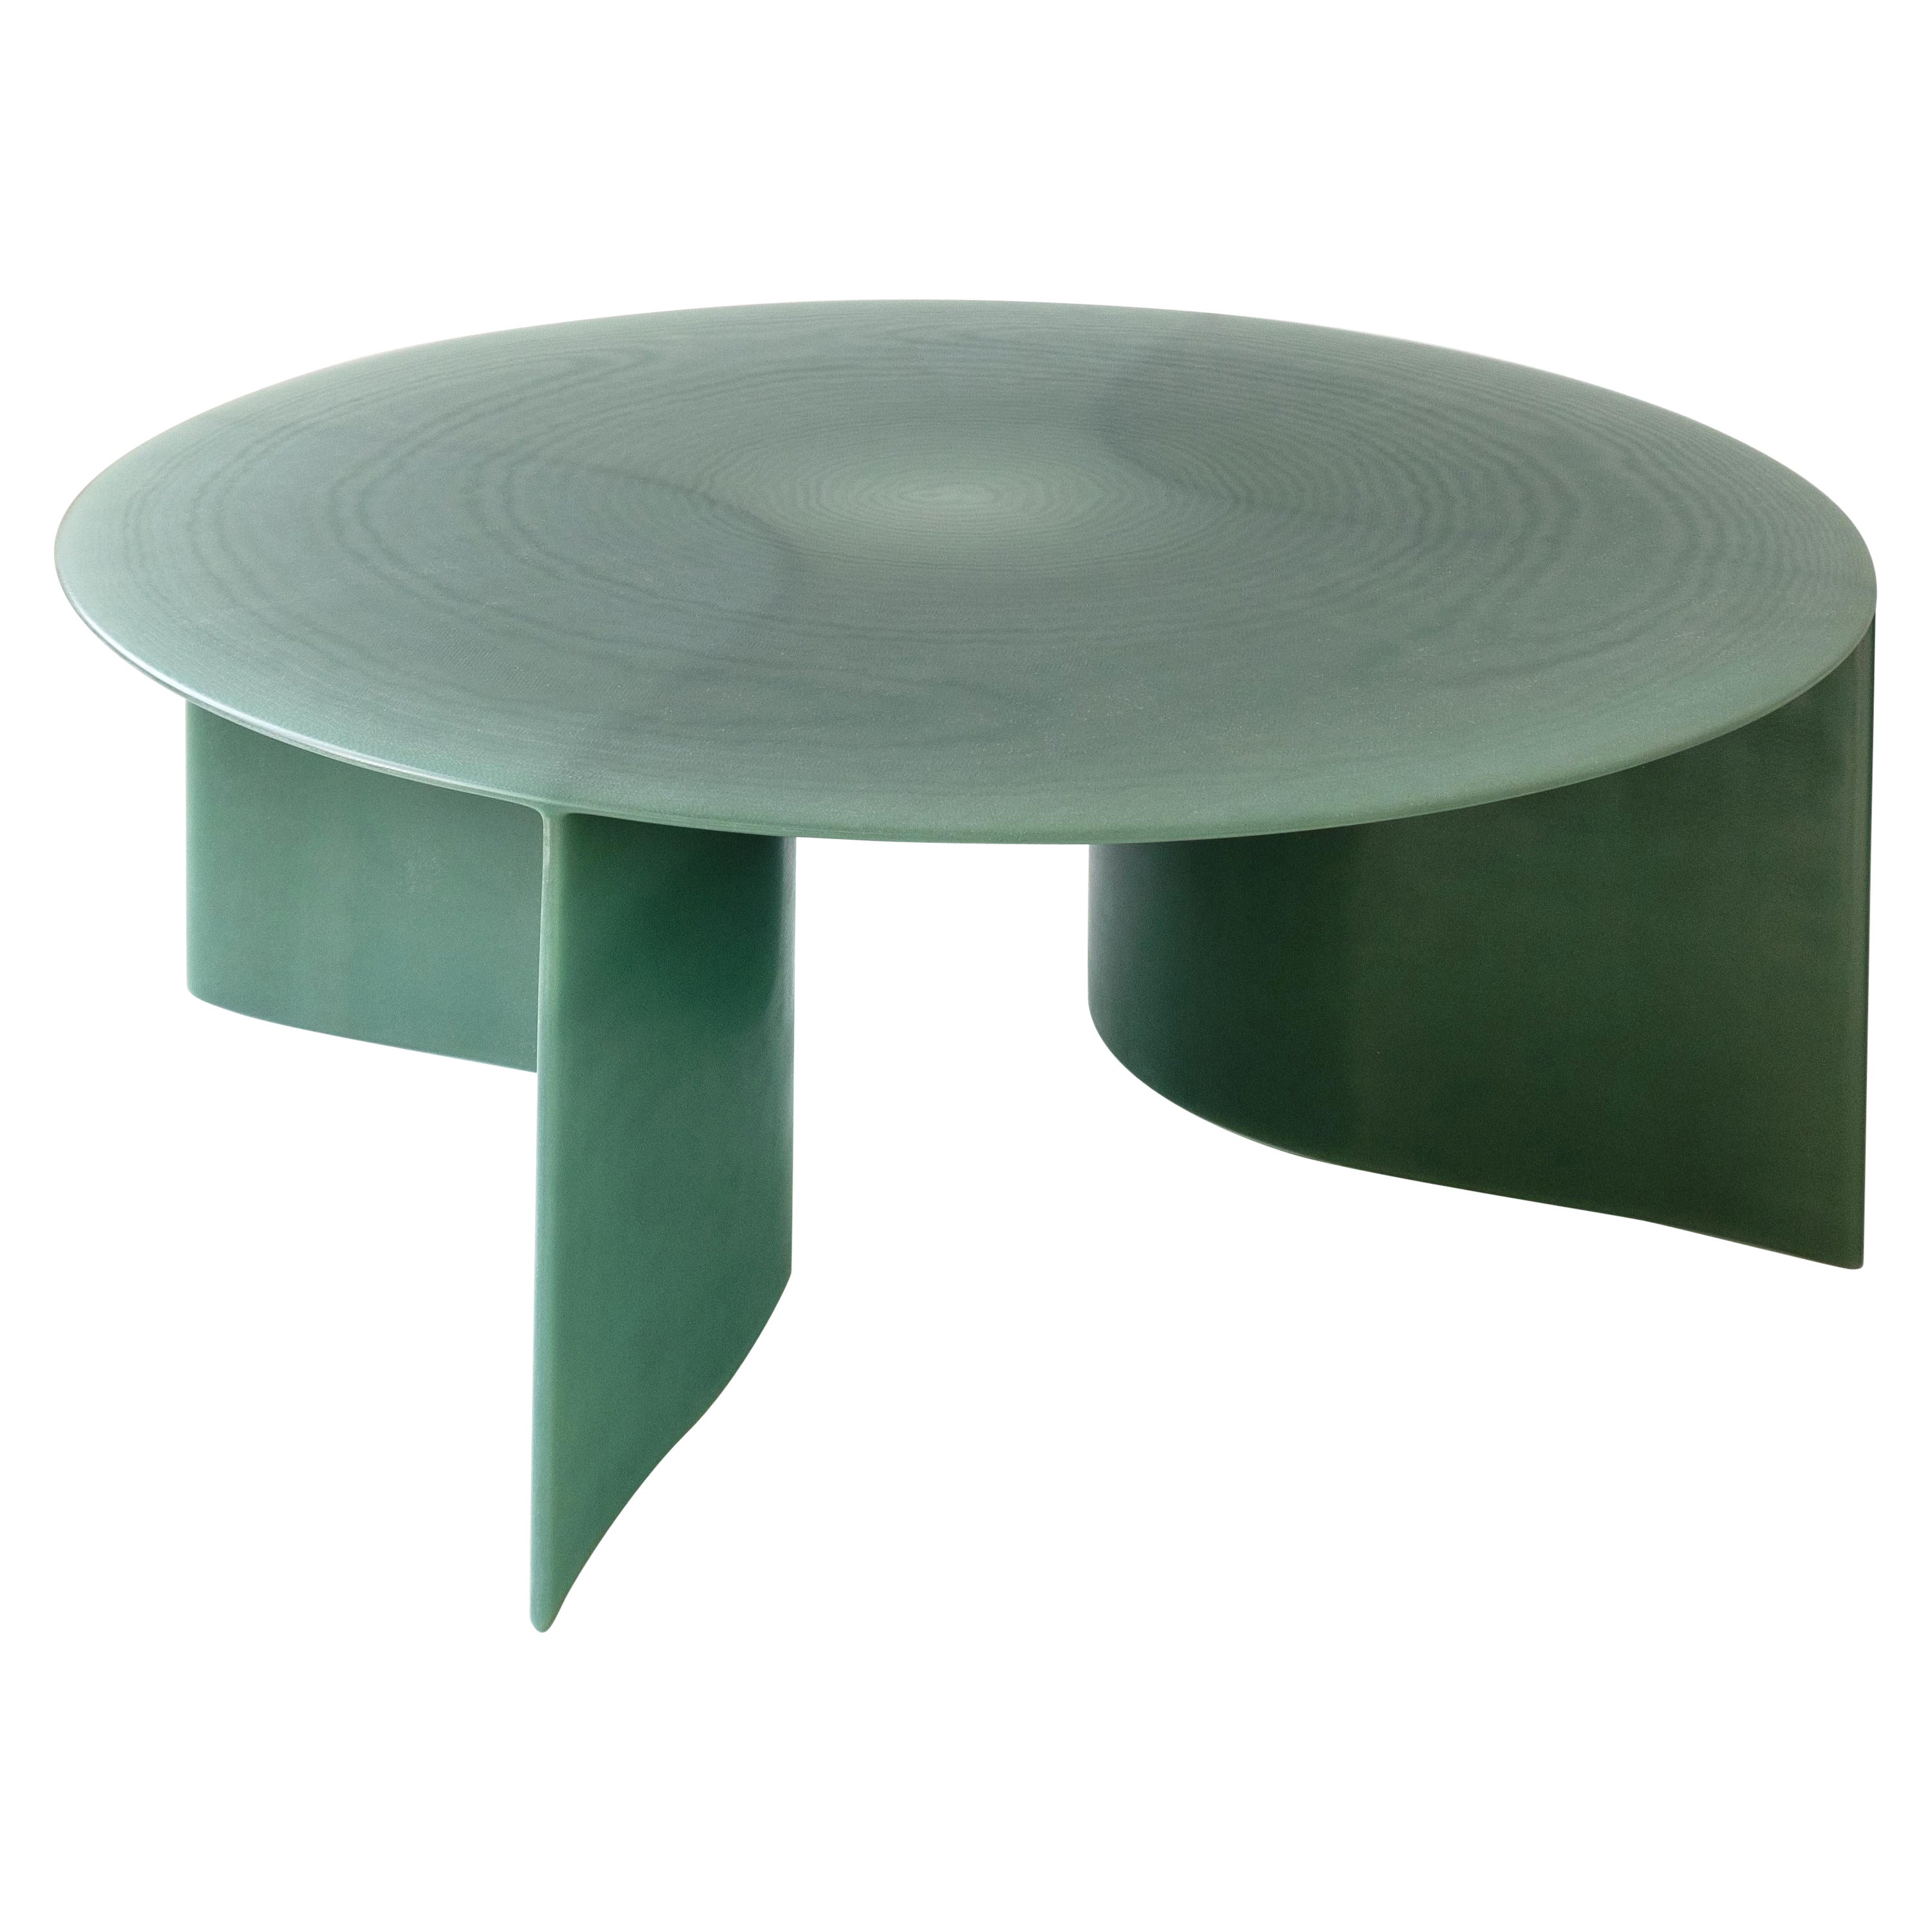 Table basse contemporaine en fibre de verre verte, New Wave Round 120cm, par Lukas Cober